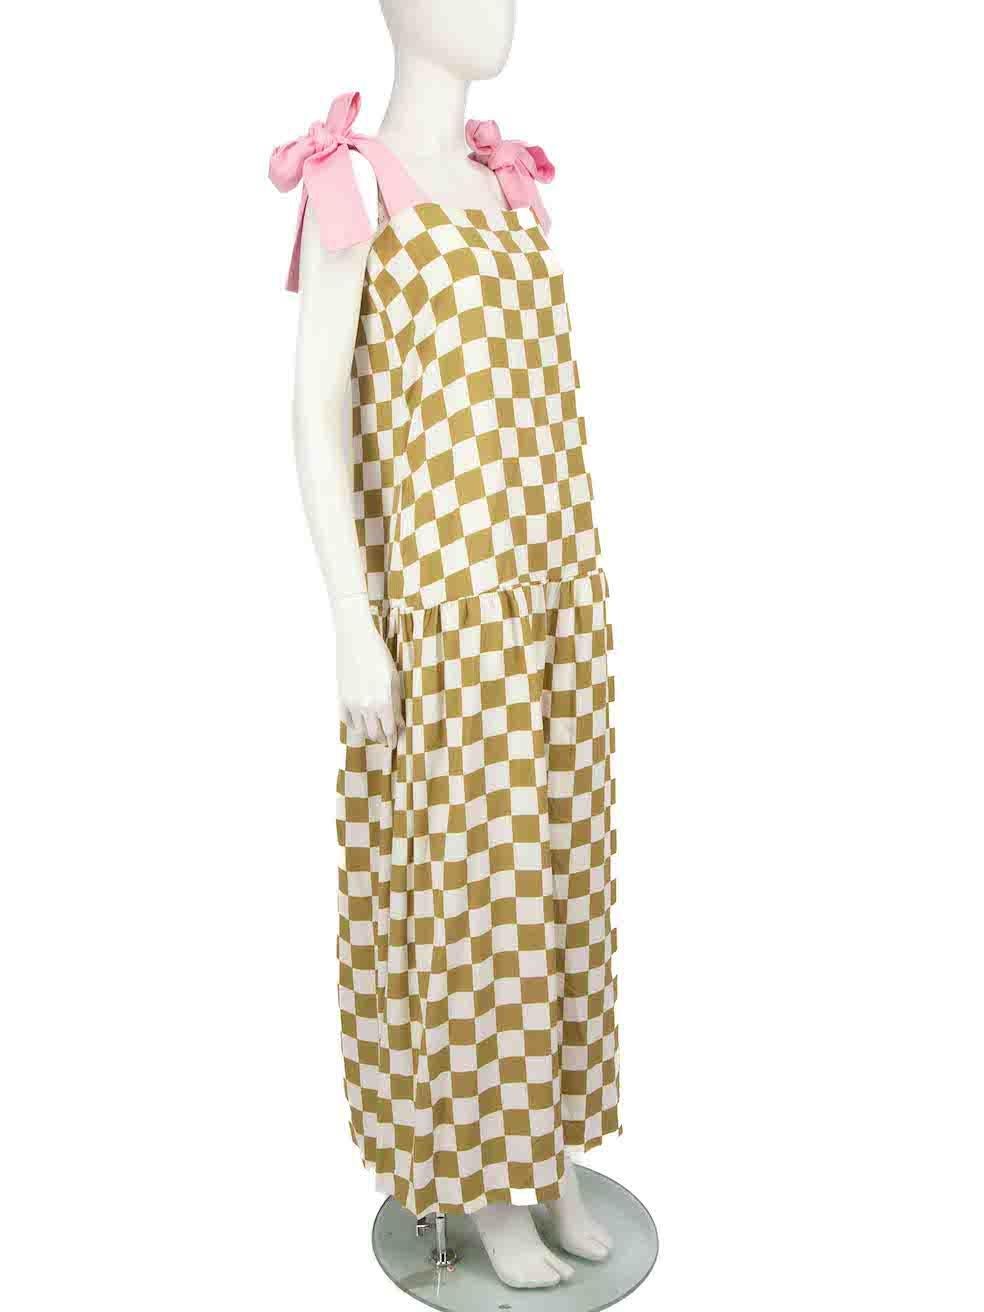 CONDITION ist nie getragen, mit Tags. Keine sichtbaren Abnutzungserscheinungen am Kleid sind bei diesem neuen Adriana Degreas Designer-Wiederverkaufsartikel erkennbar.
 
 
 
 Einzelheiten
 
 
 Mehrfarbig - grün, weiß, rosa
 
 Modal
 
 Kleid
 
